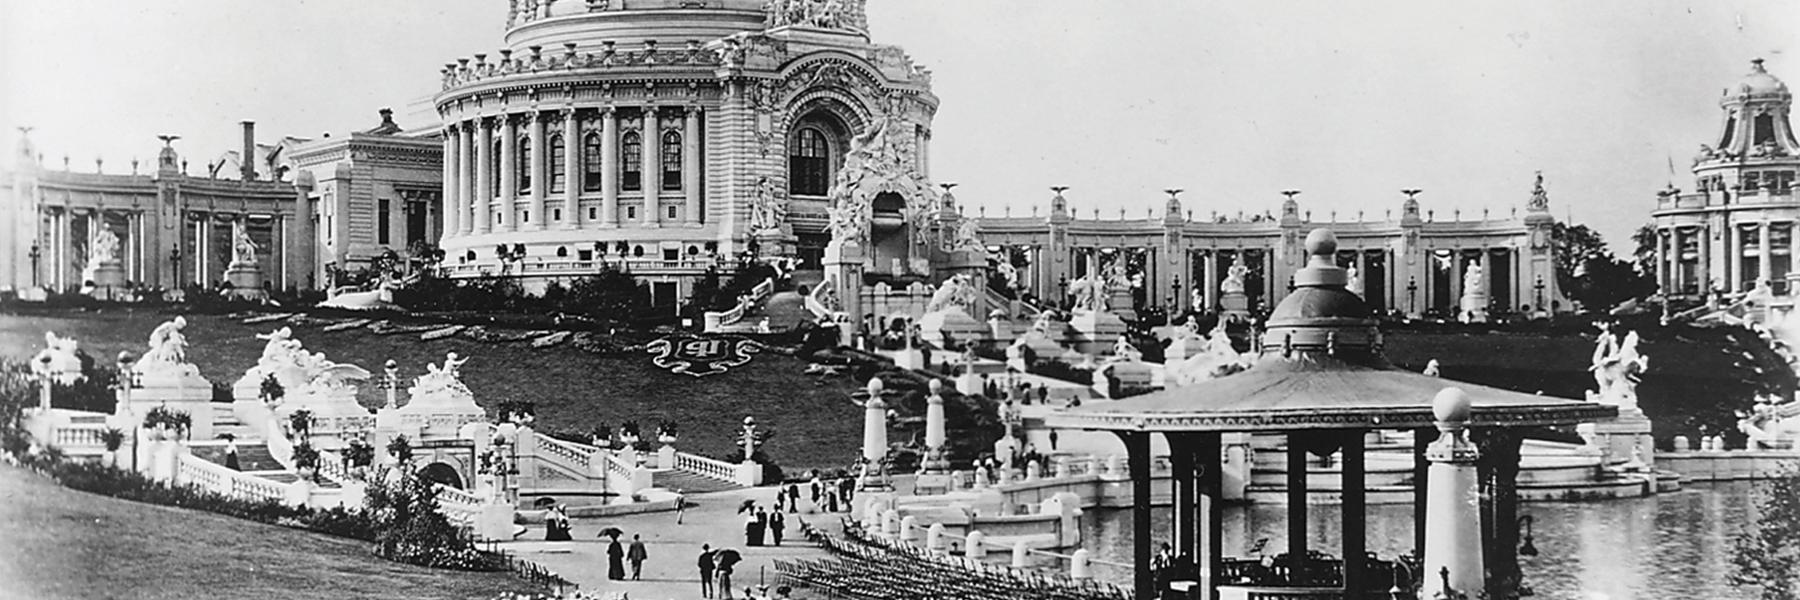 1904年的世界博览会在圣保罗的森林公园举行. Louis.